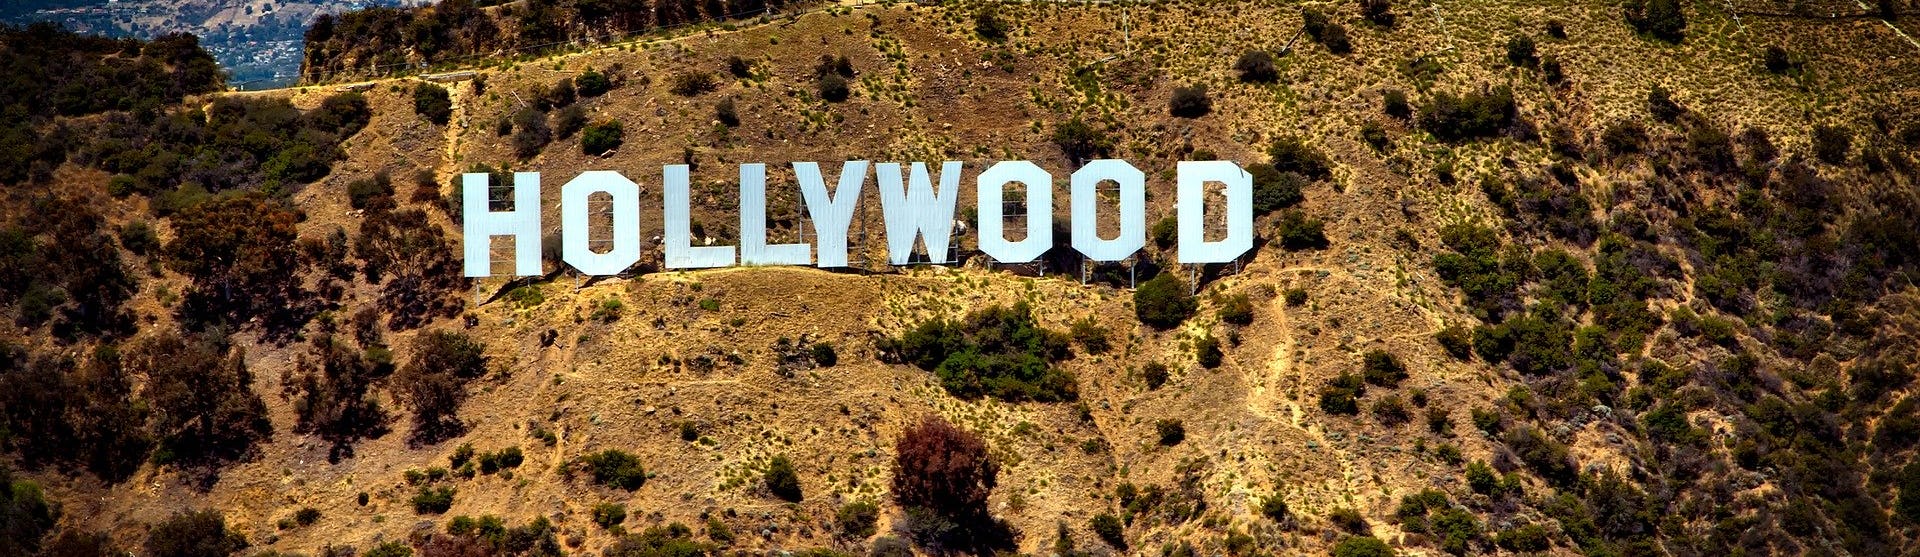 Den ikoniska Hollywood-skylten på bergskanten.